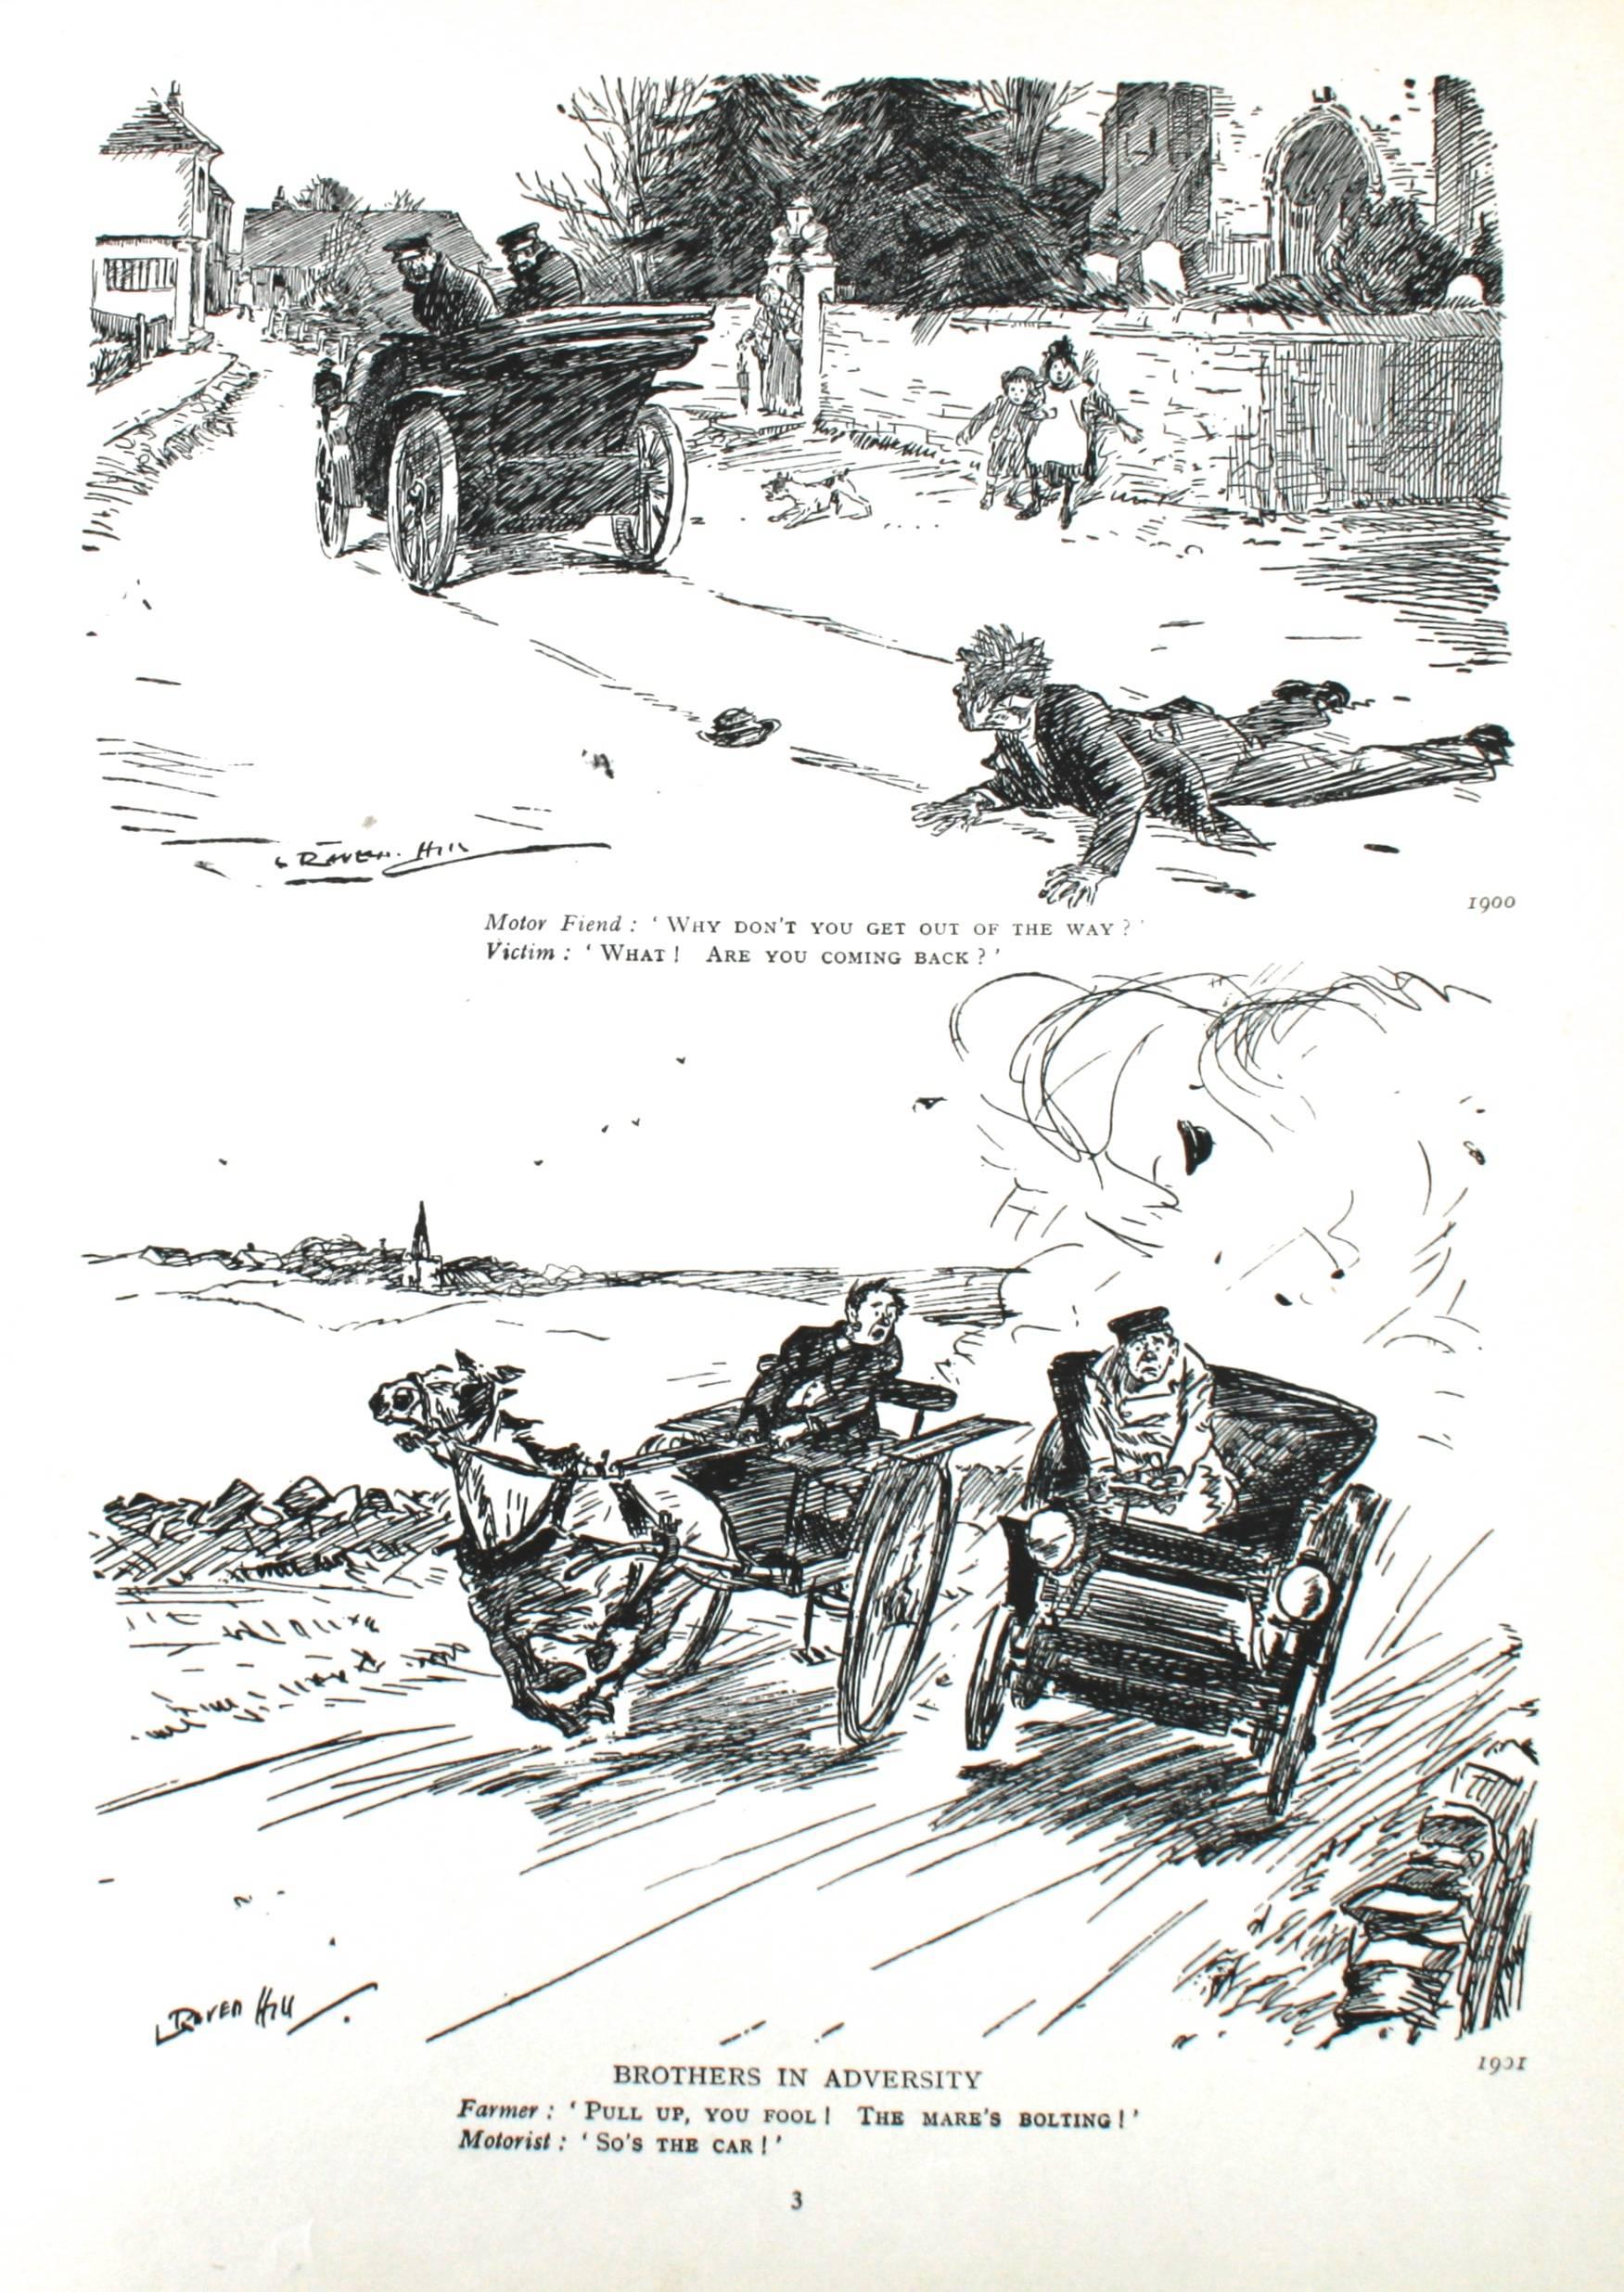 20ième siècle Livre de M. Punch's Motor, première édition en vente